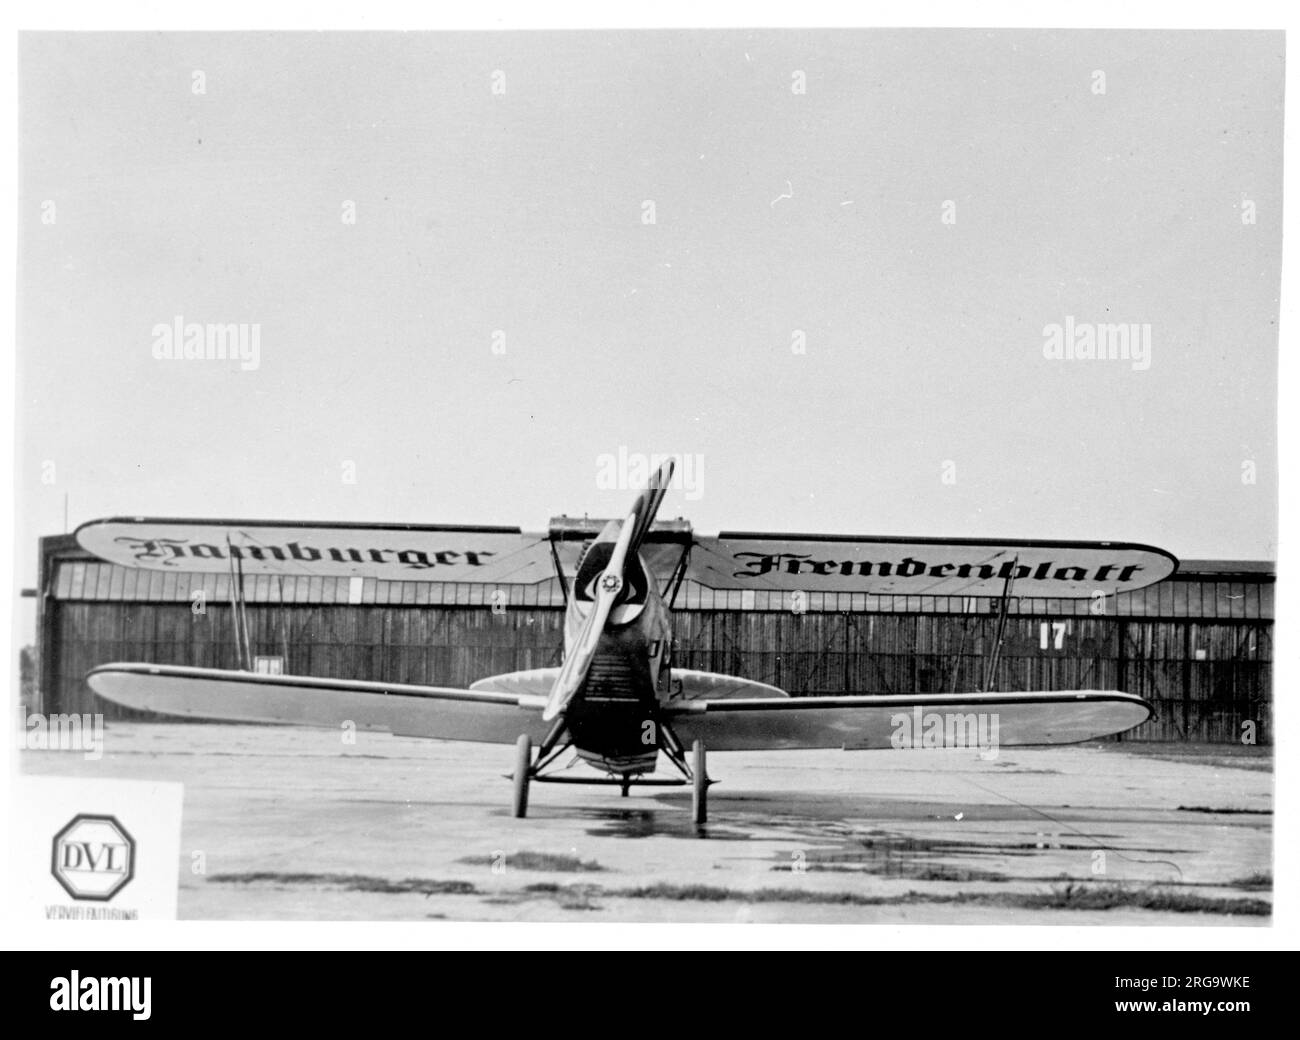 Albatros L.72c Albis D-1140 (msn 10108) der Hamburger Fremdenblatt-Zeitung. Die L.72 wurde höchstwahrscheinlich als Bomber während der frühen geheimen deutschen Wiederaufrüstungsprogramme studiert, Albatros in Berlin-Johannisthal präsentierte dieses traditionelle Doppeldecker als Transport. Die renommierte Pressegruppe Ullstein AG aus Berlin bestellte zwei Flugzeuge für die schnelle Zustellung von Zeitungen. Als L-72b bezeichnet, wurden sie am 8. April 1926 ausgeliefert (c-n 10074 D-888, c-n 10075 D-890). Die Zeitungen, verpackt in Bündeln, stapeln sich in vertikalen Gestellen, die im Rumpf montiert sind. Ein mechanisches System ermöglichte es den Piloten Stockfoto